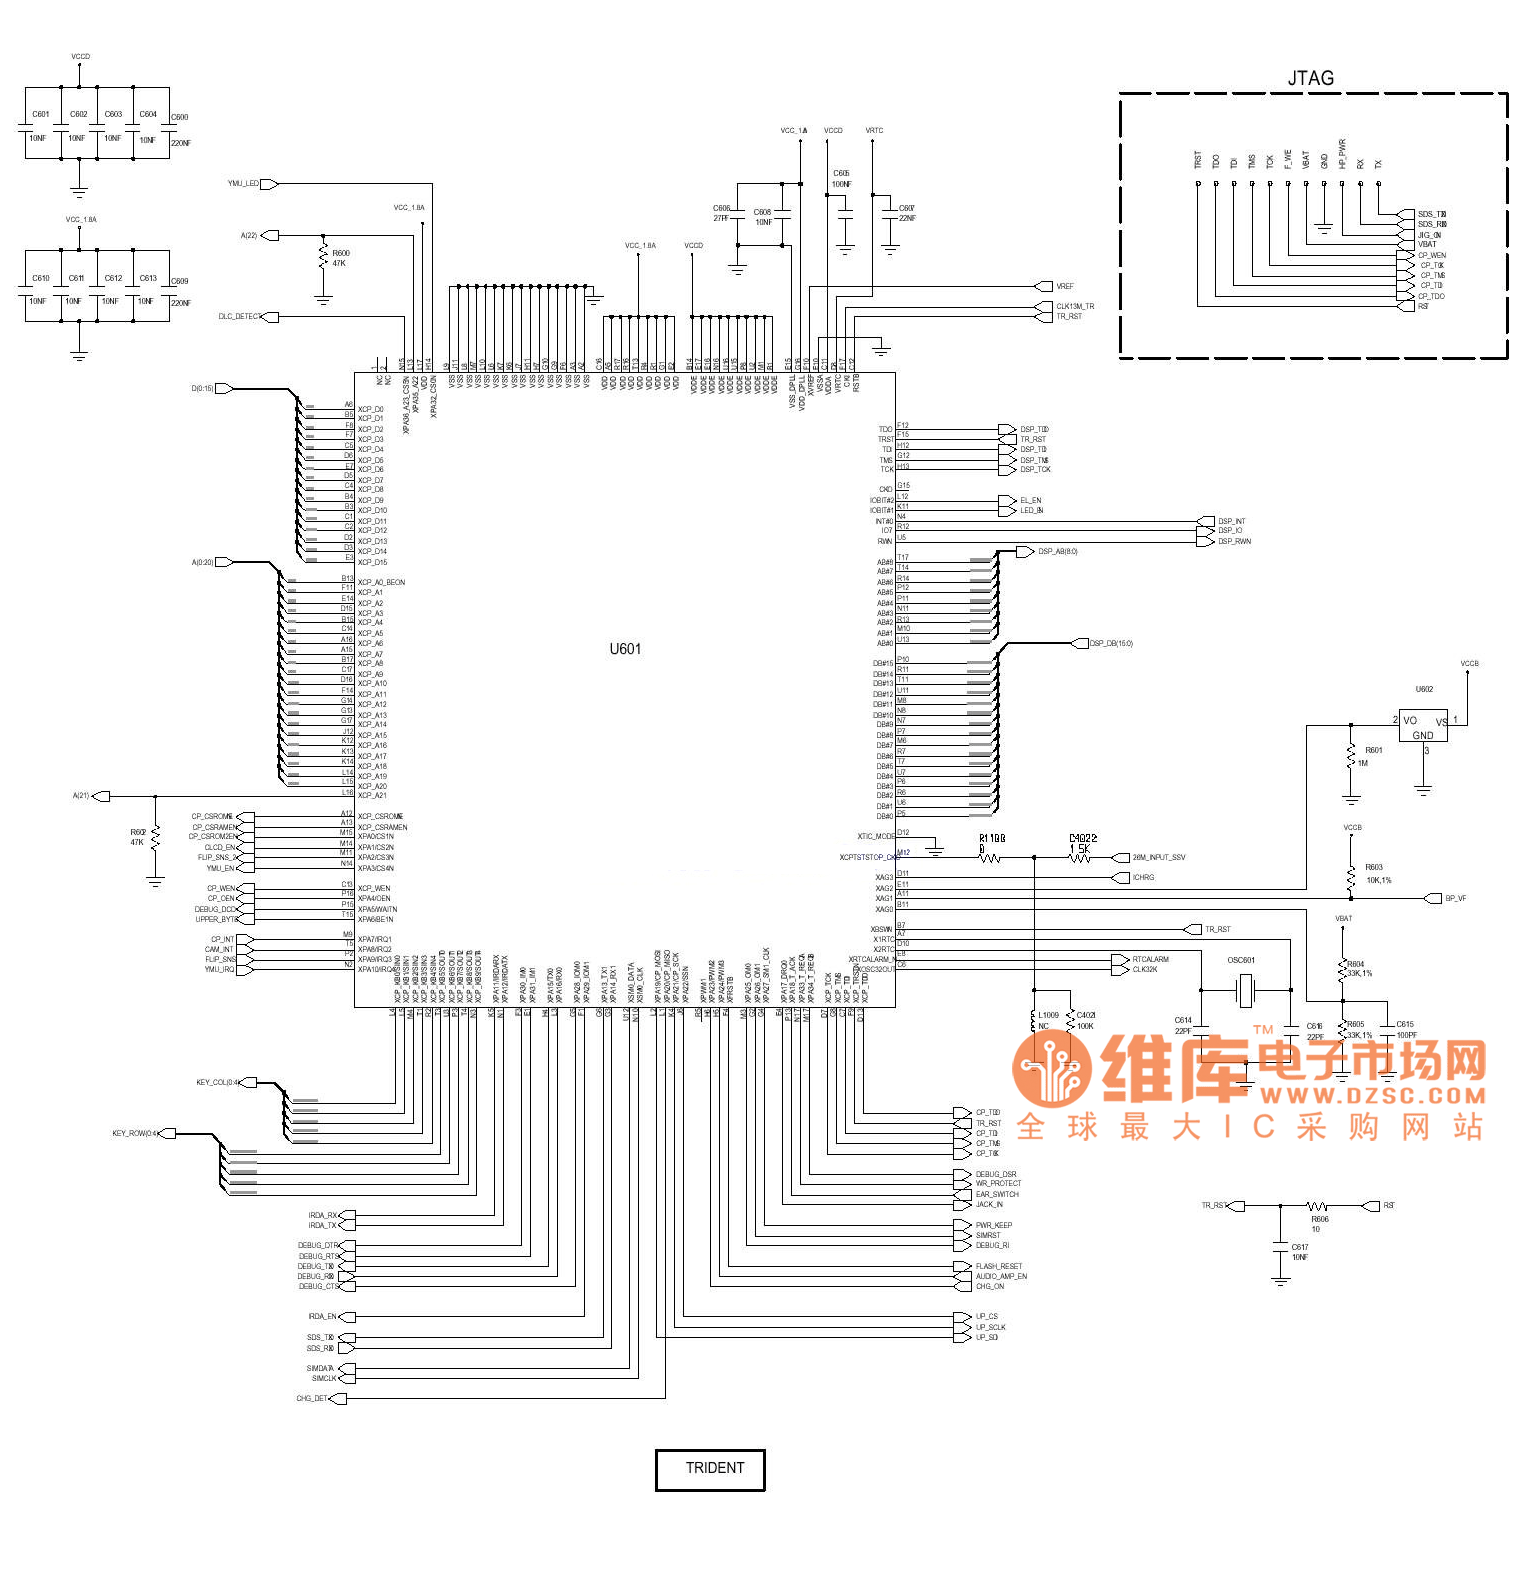 SGH-P408故障排除及电路原理图_13